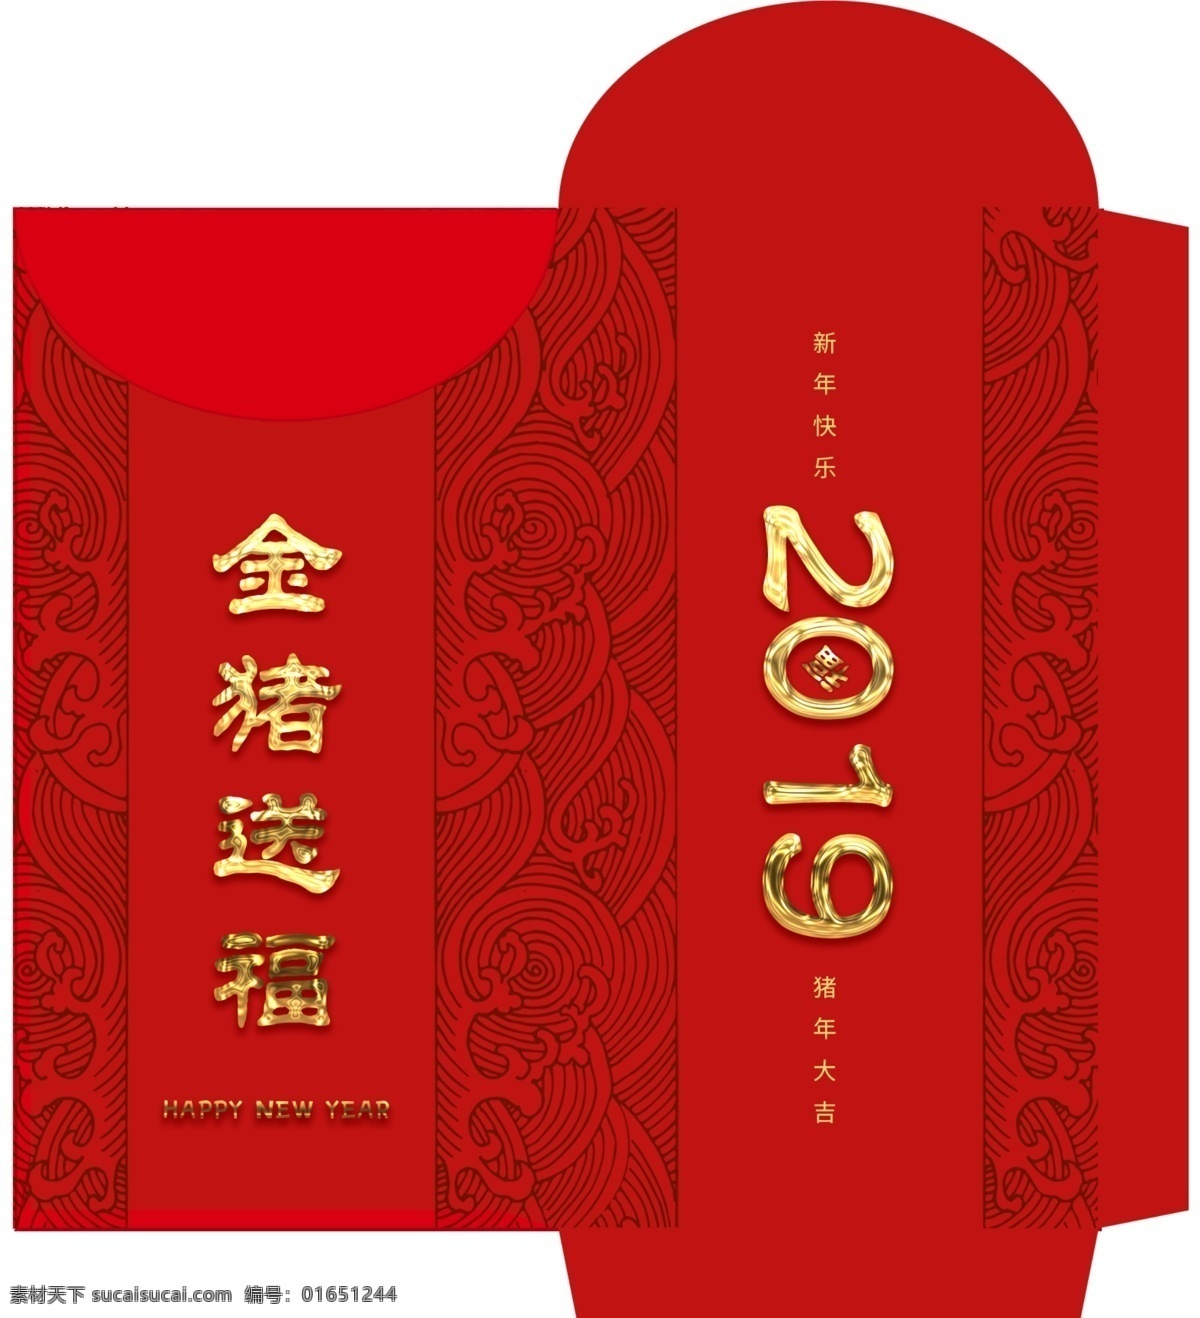 2018 创意 红包 模版 psd素材 创意设计 免费素材 平面素材 平面模板 红包模板 红包设计 创意红包设计 创意红包 设计创意